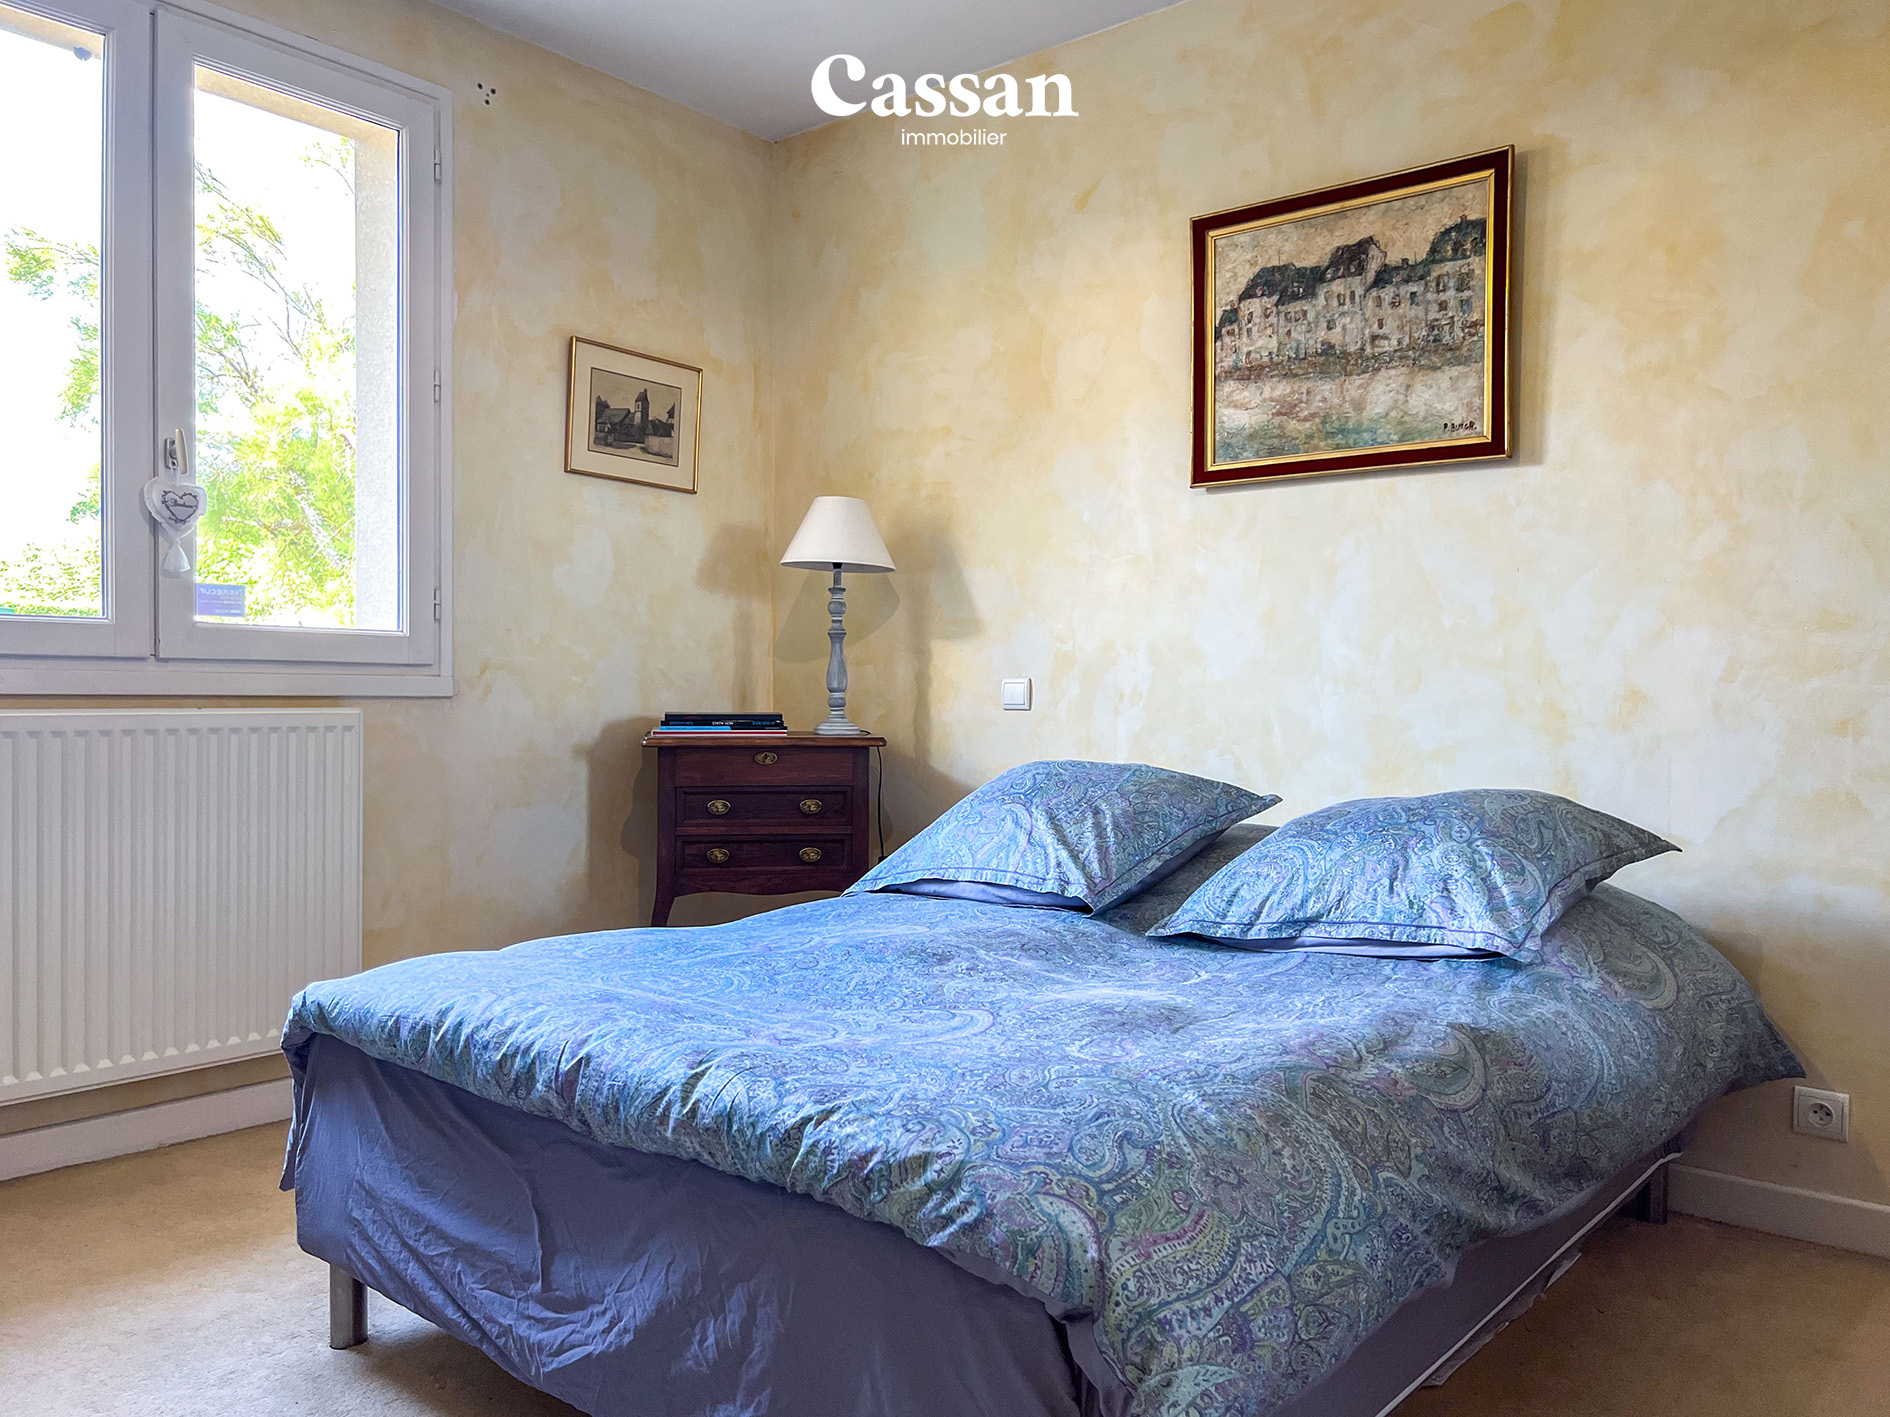 Chambre maison à vendre Sansac-de-Marmiesse Cassan immobilier